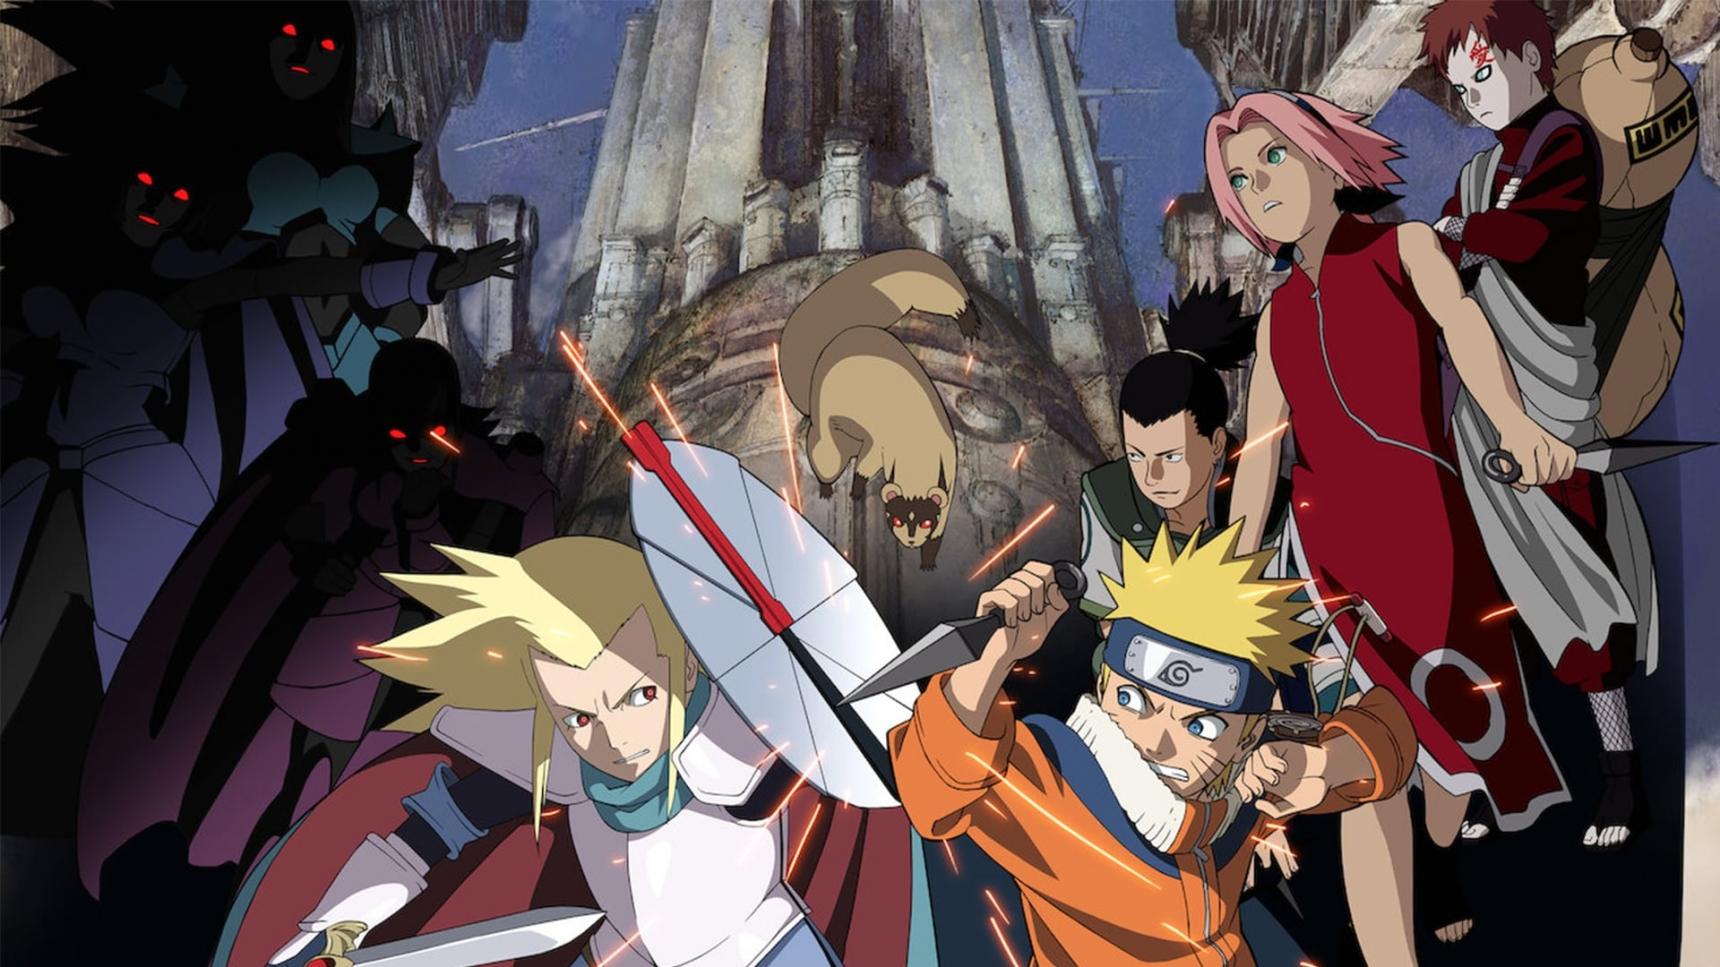 poster de Naruto 2: Las ruinas ilusorias en lo profundo de la tierra